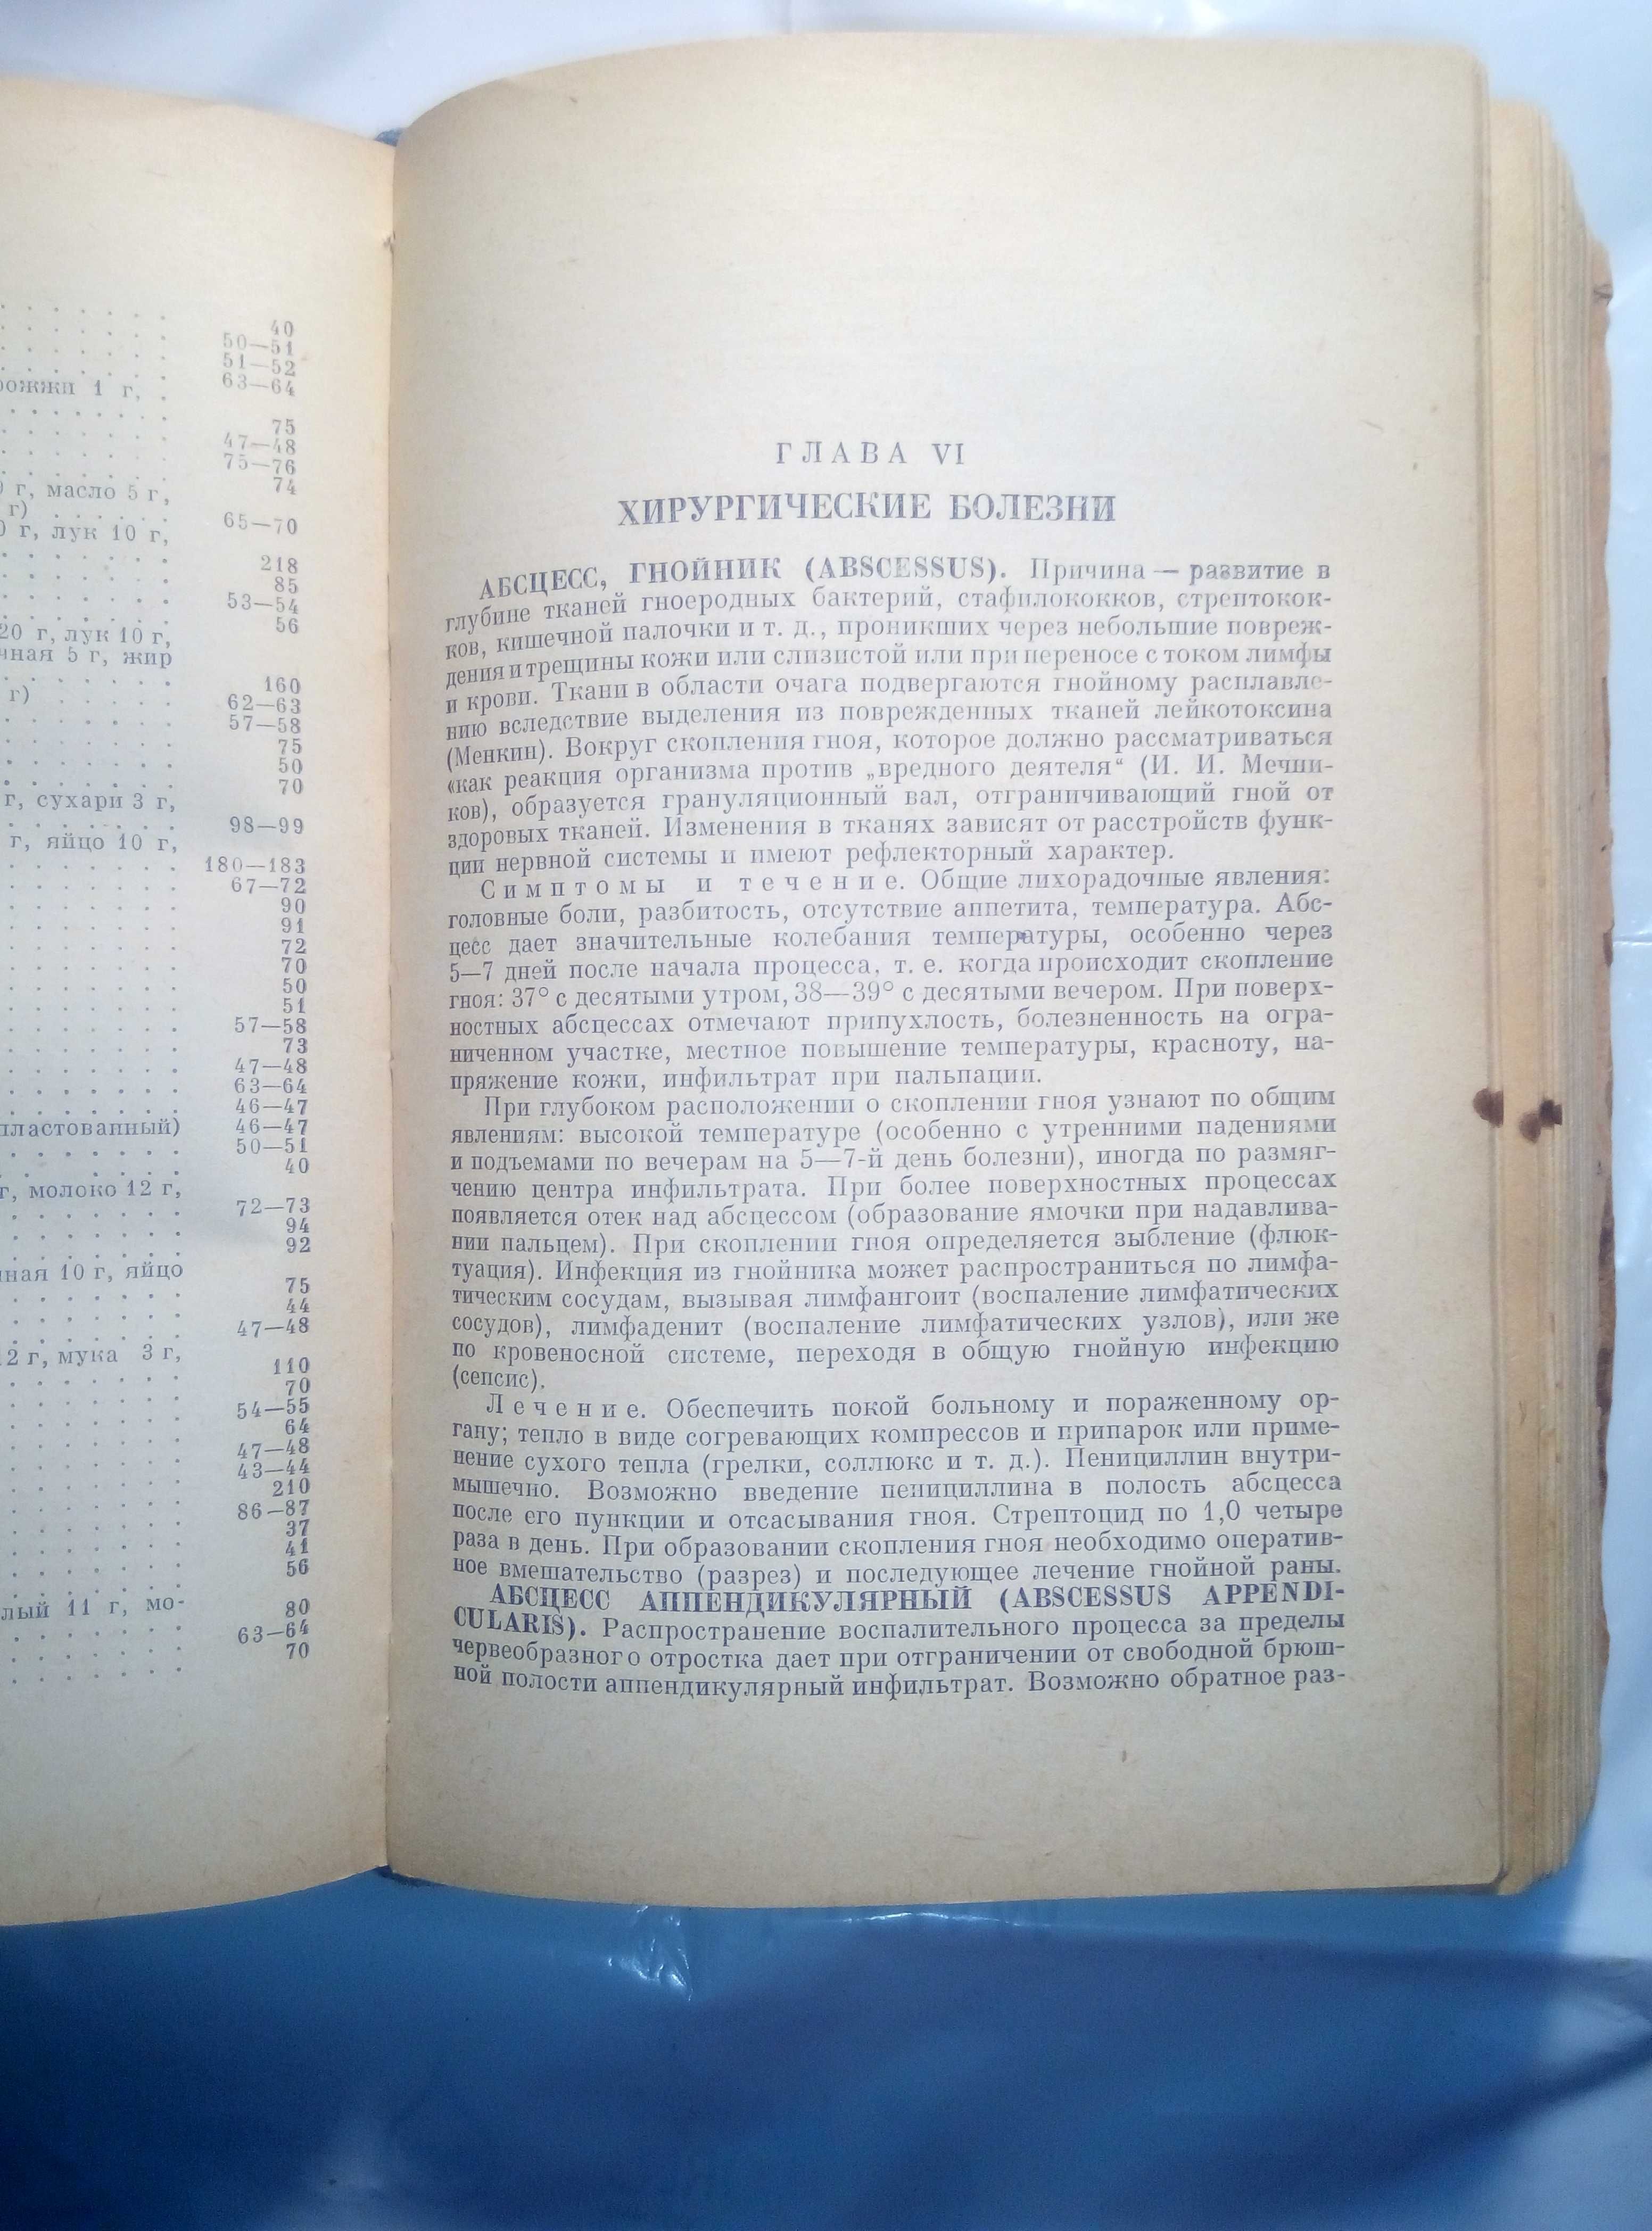 Медицинский Справочник для фельдшеров 1952 год